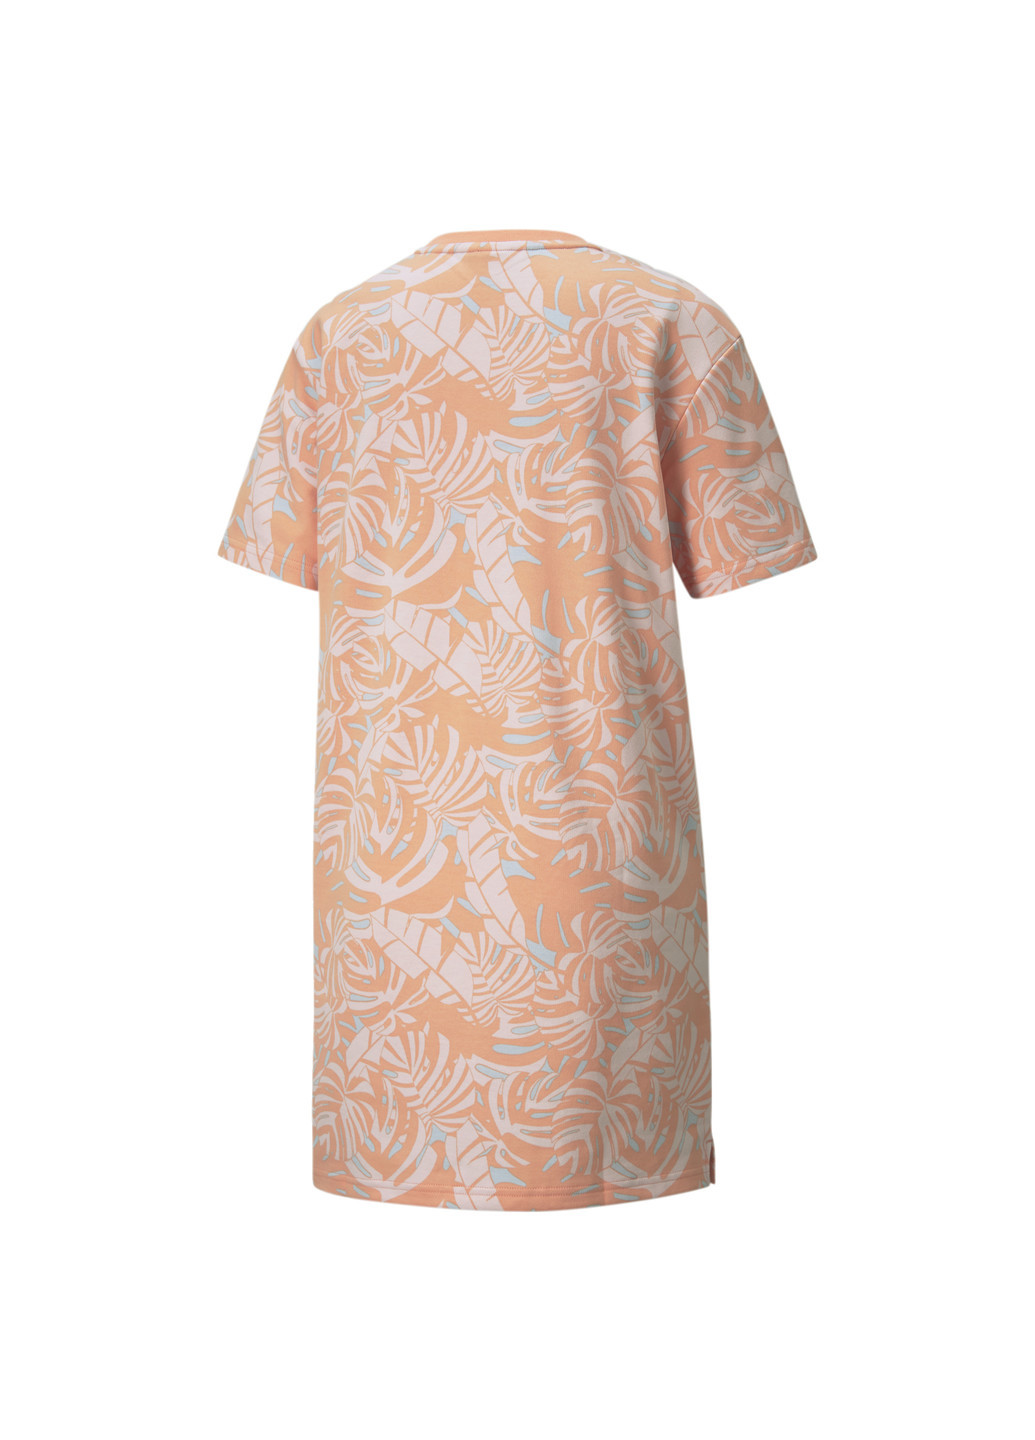 Платье FLORAL VIBES Printed Women’s Dress Puma однотонная оранжевая спортивная хлопок, полиэстер, эластан